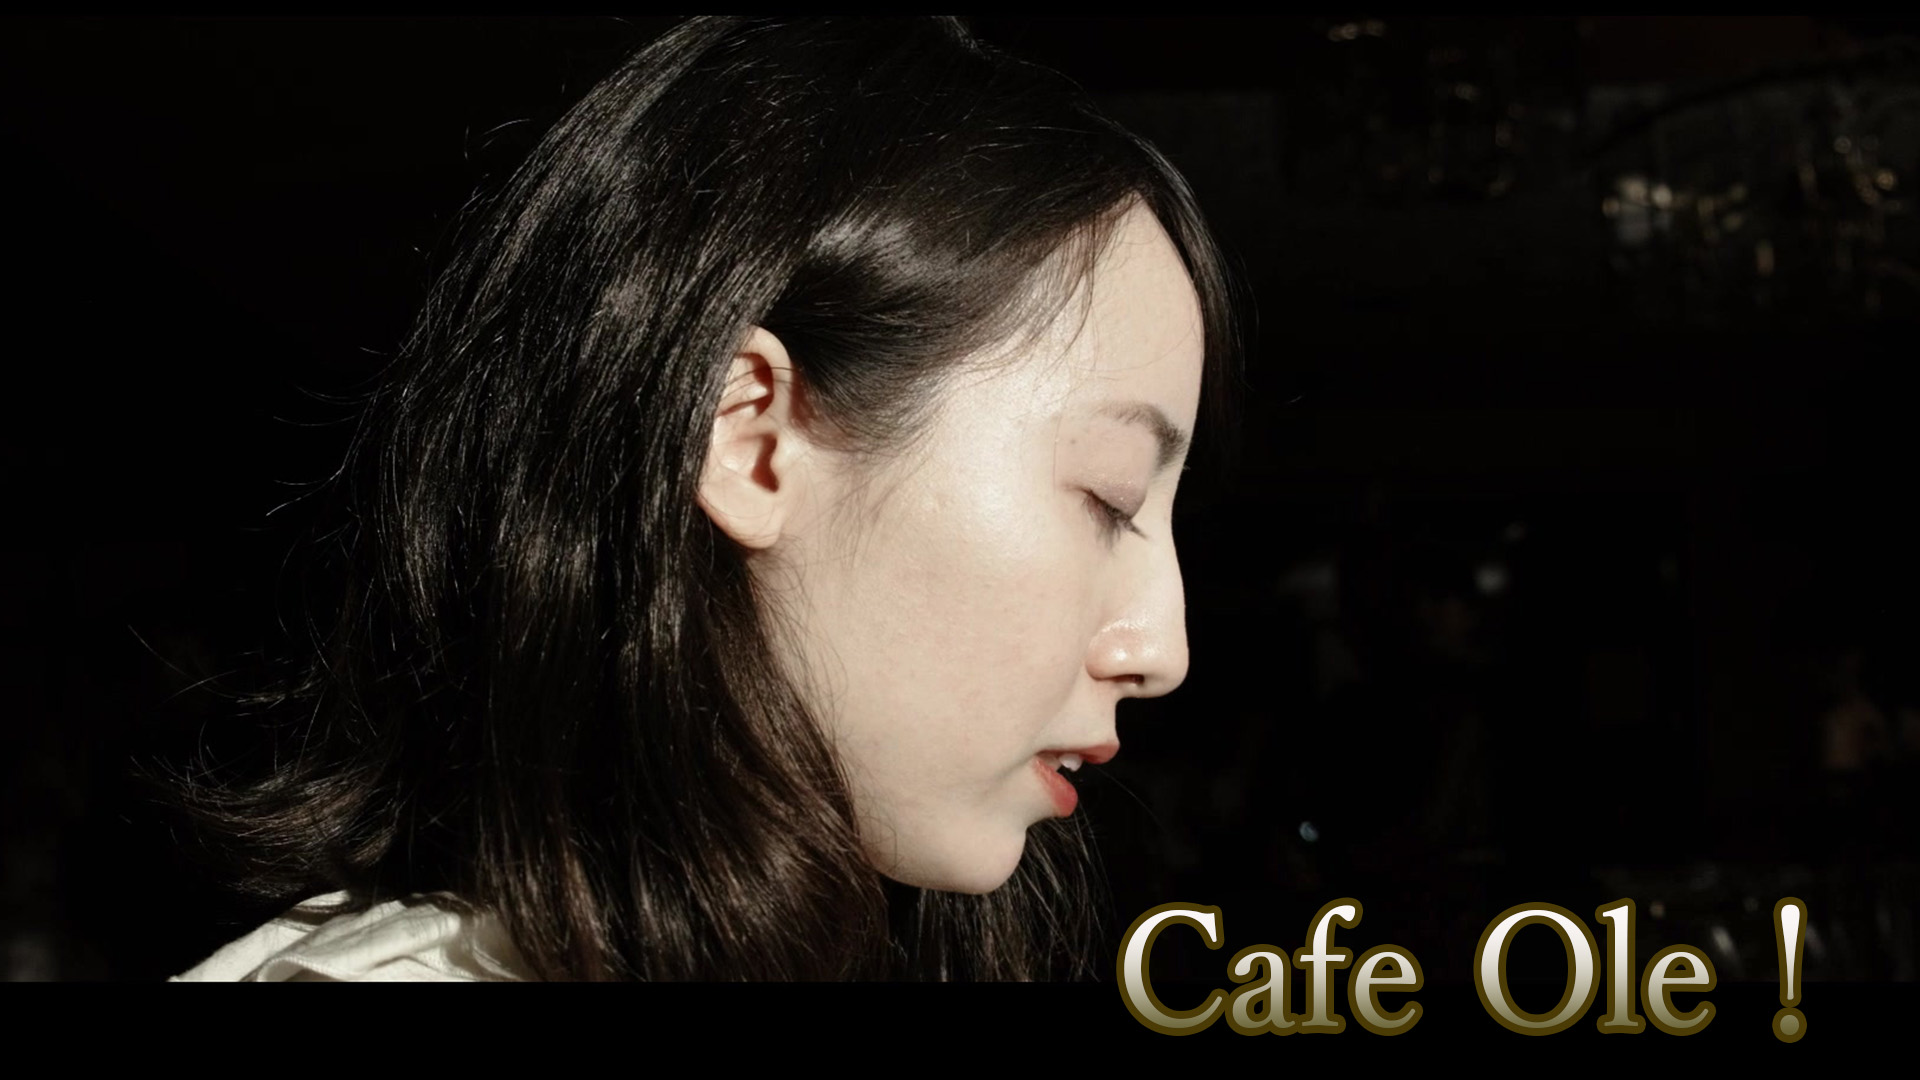 Cafe Ole!